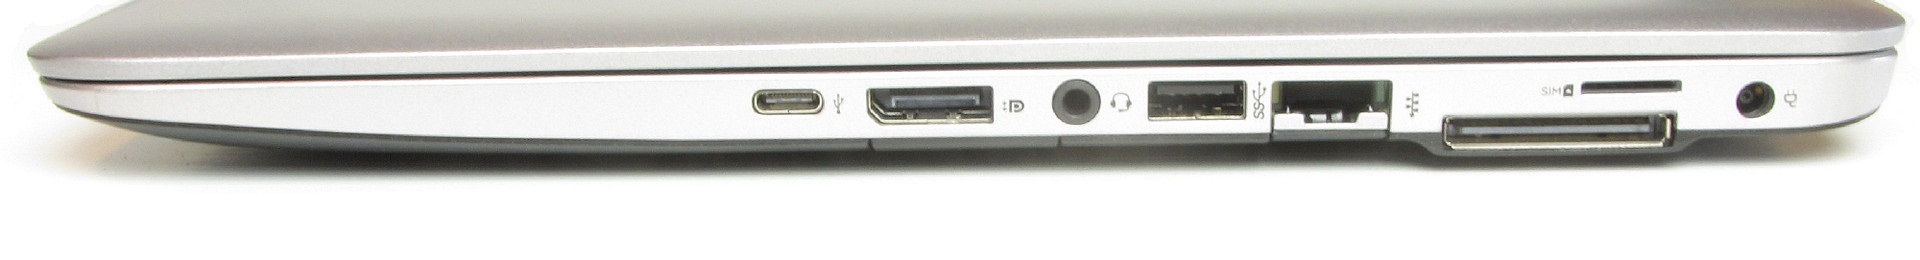 لپ‌تاپ استوک HP مدل EliteBook 850 G3 پورت های راست